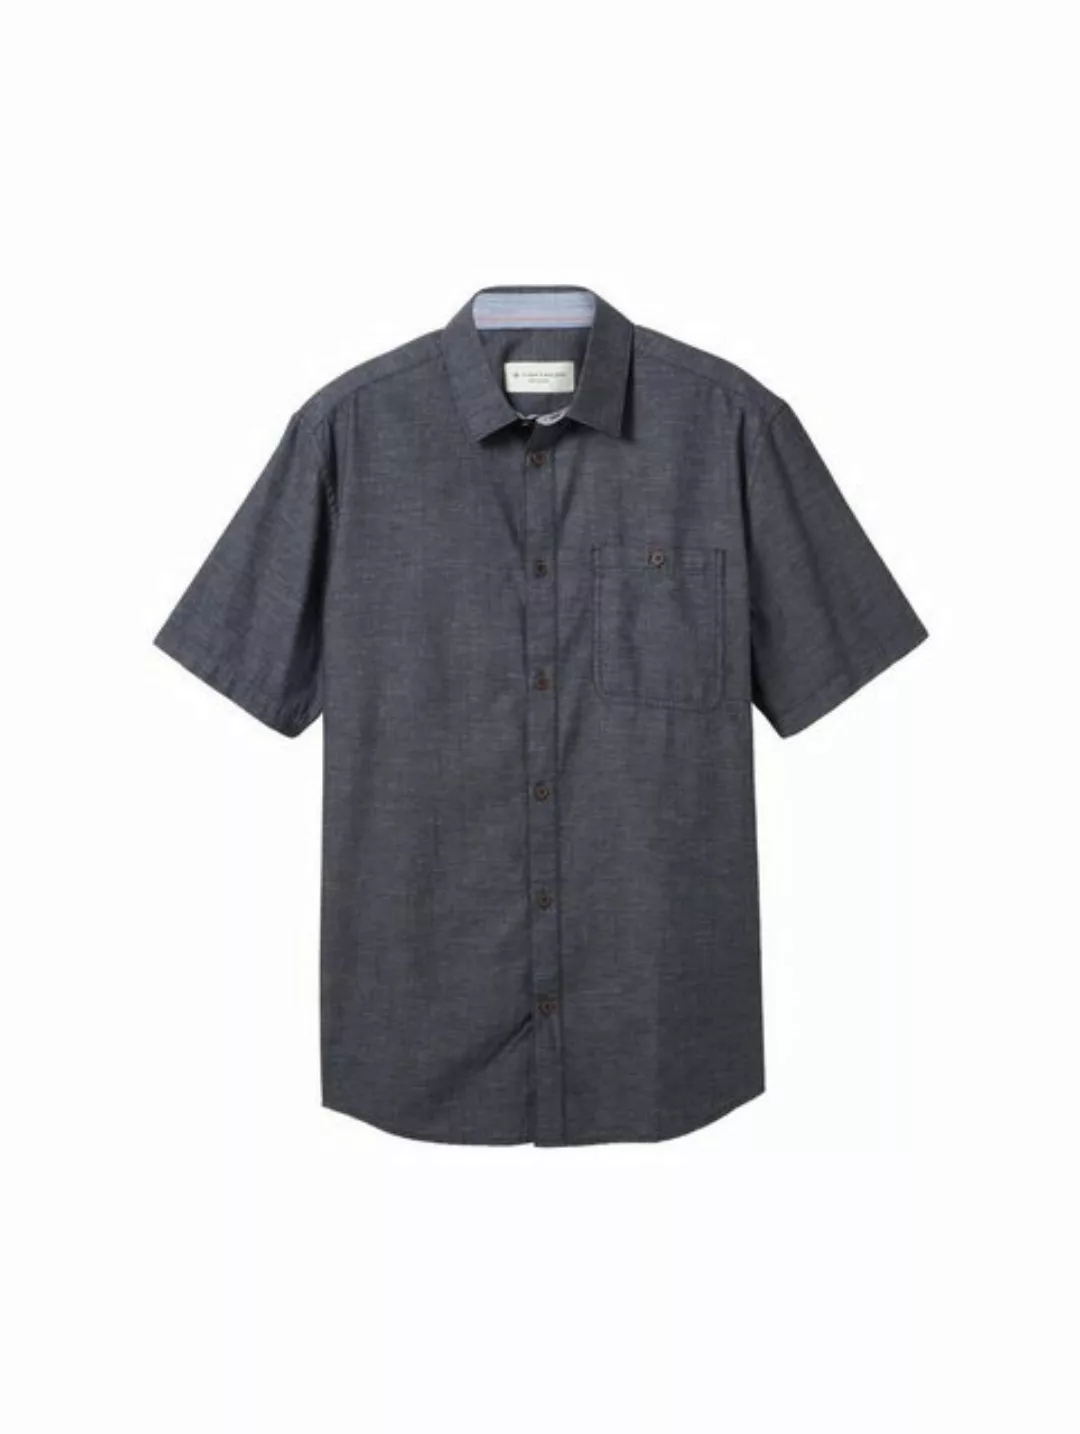 TOM TAILOR T-Shirt structured shirt, navy square structure günstig online kaufen